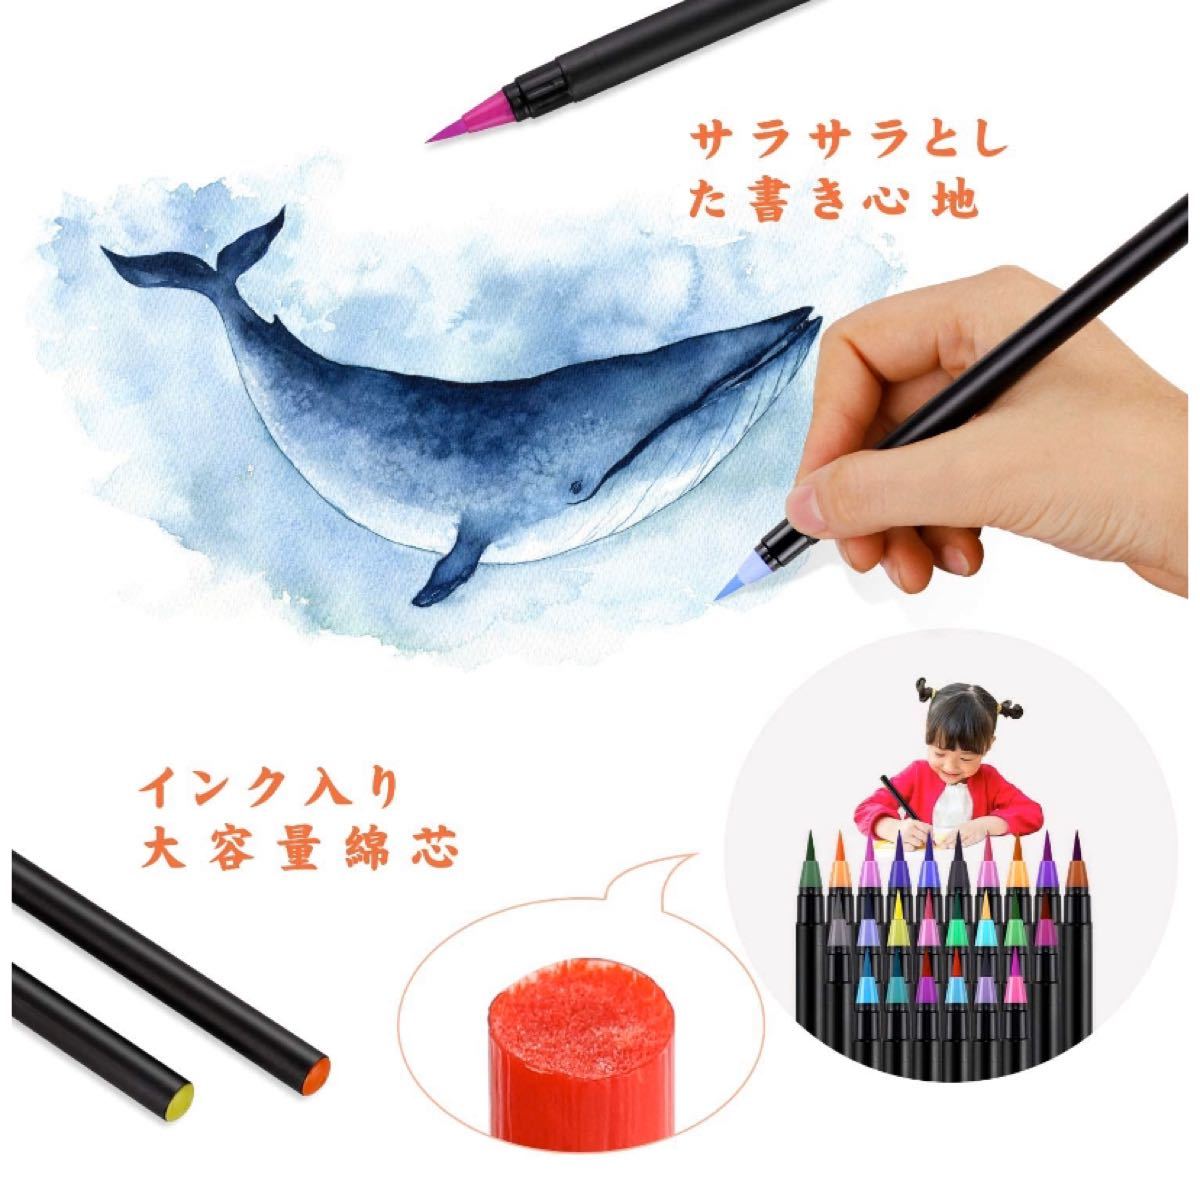 Paypayフリマ 水彩毛筆 カラー筆ペン 24色 水性筆ペン 水彩ペン 絵描 塗り絵アートマーカー